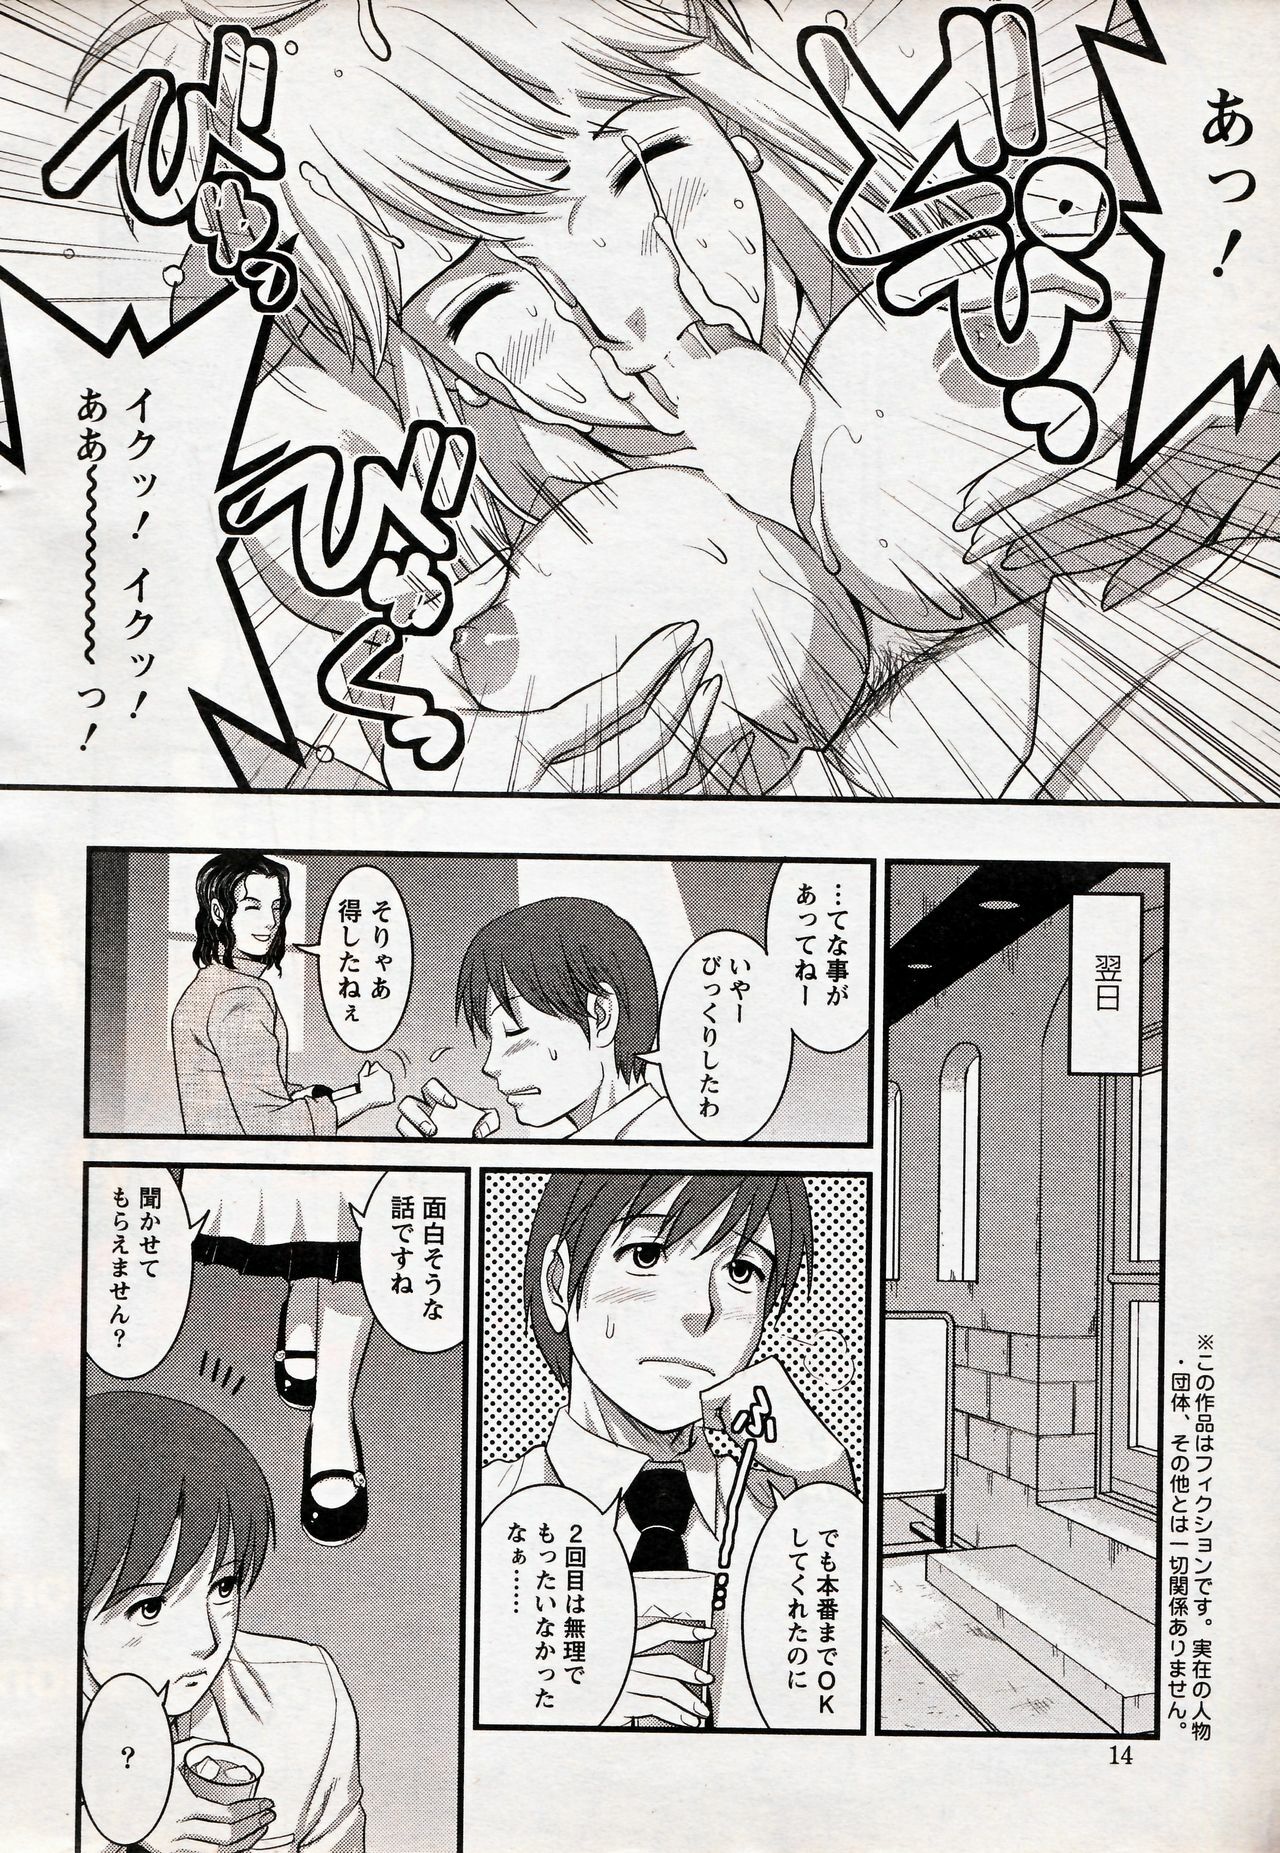 [Saigado] Haken no Muuko-san 17 page 12 full